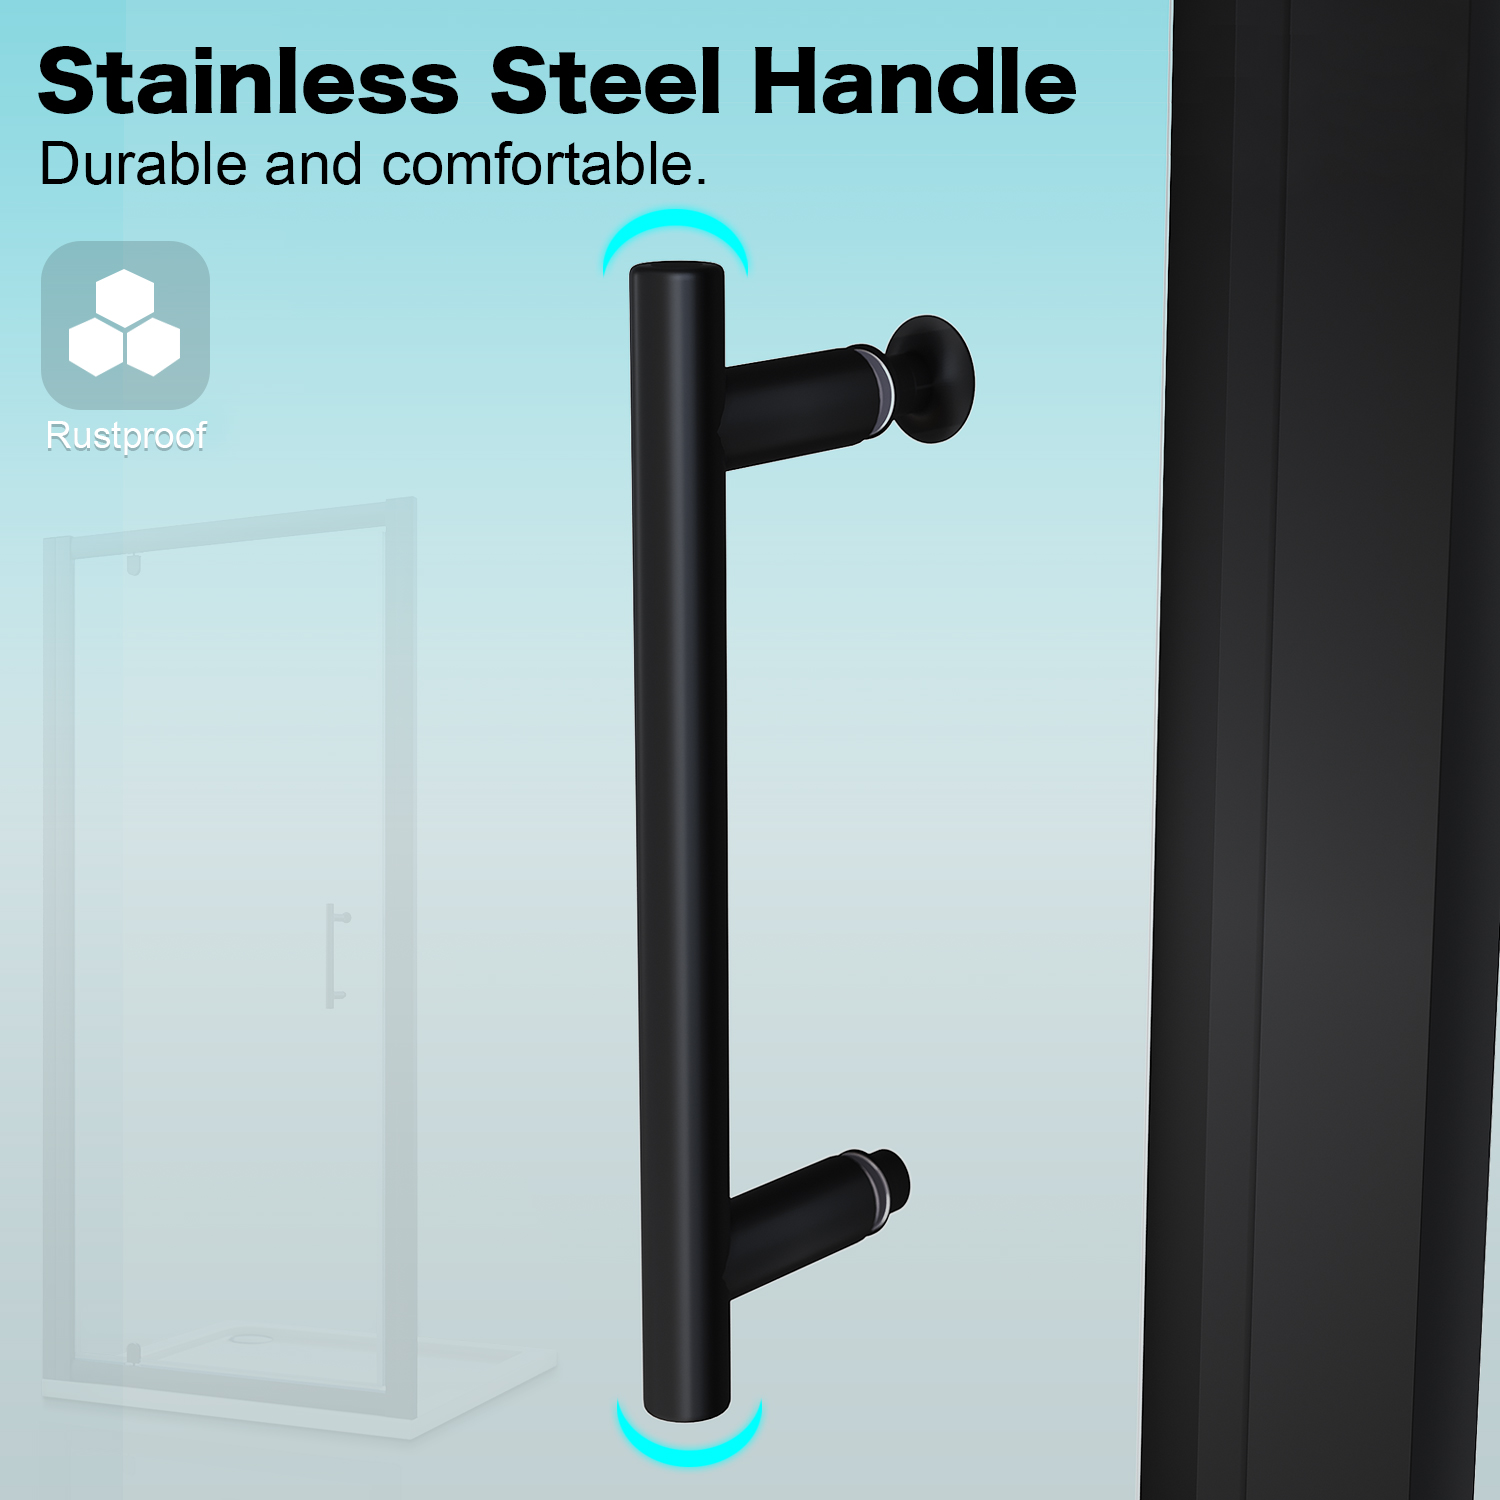 Pivot Shower Door Features: